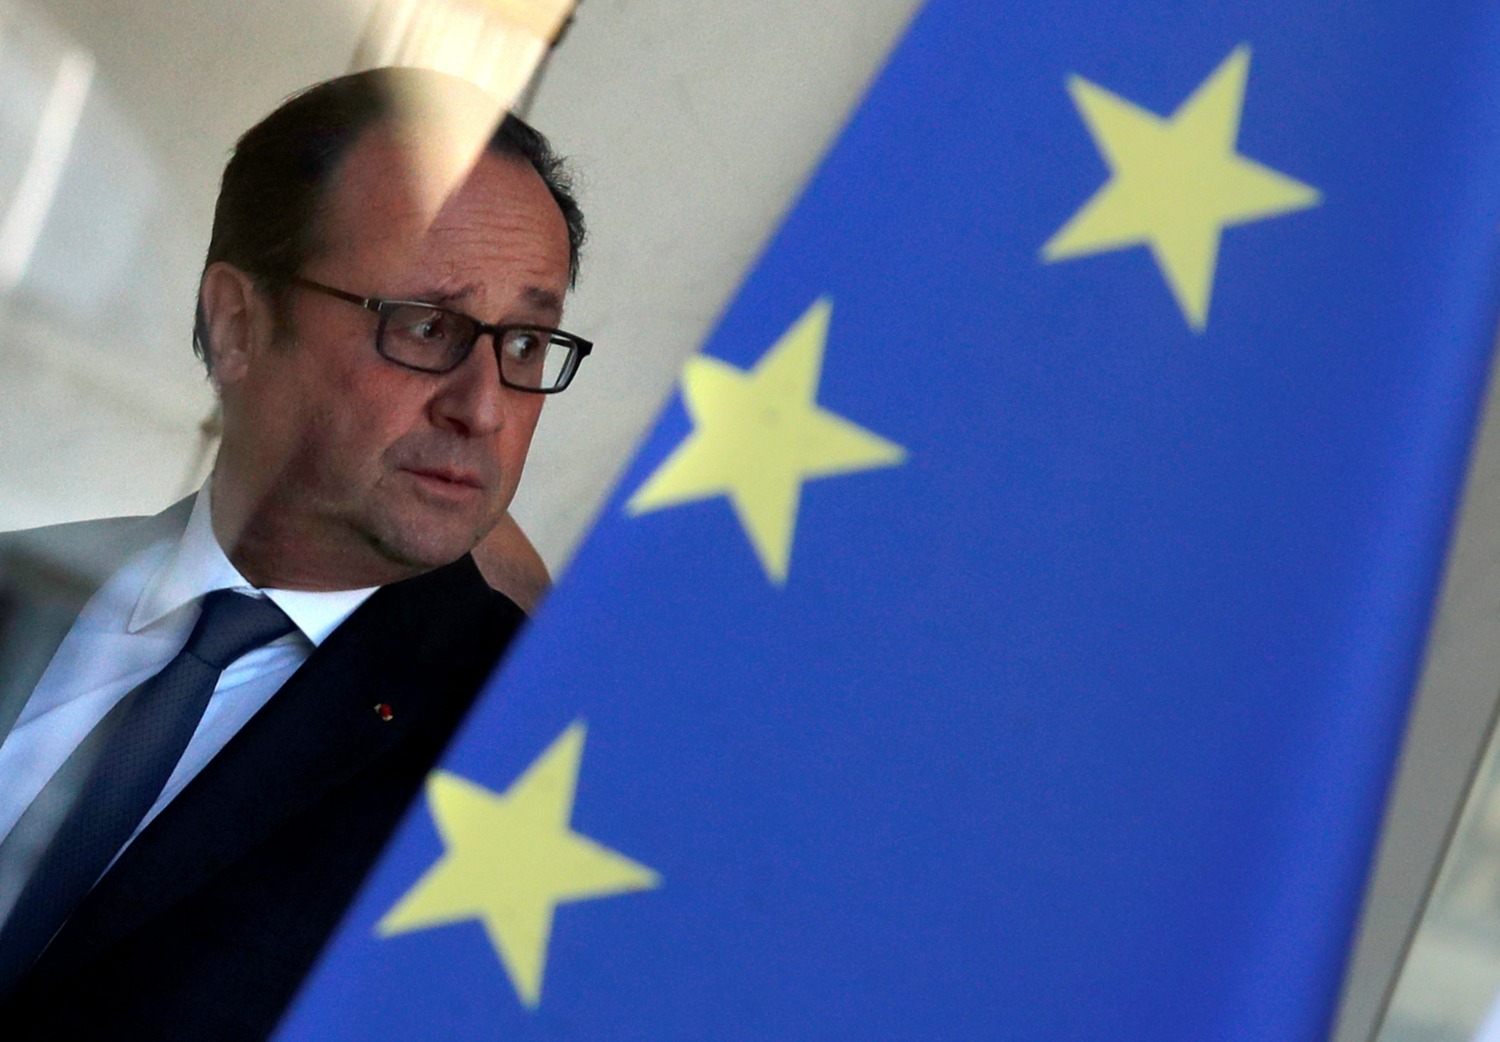 Un libro recoge la polémica opinión de Hollande sobre el Islam y los refugiados